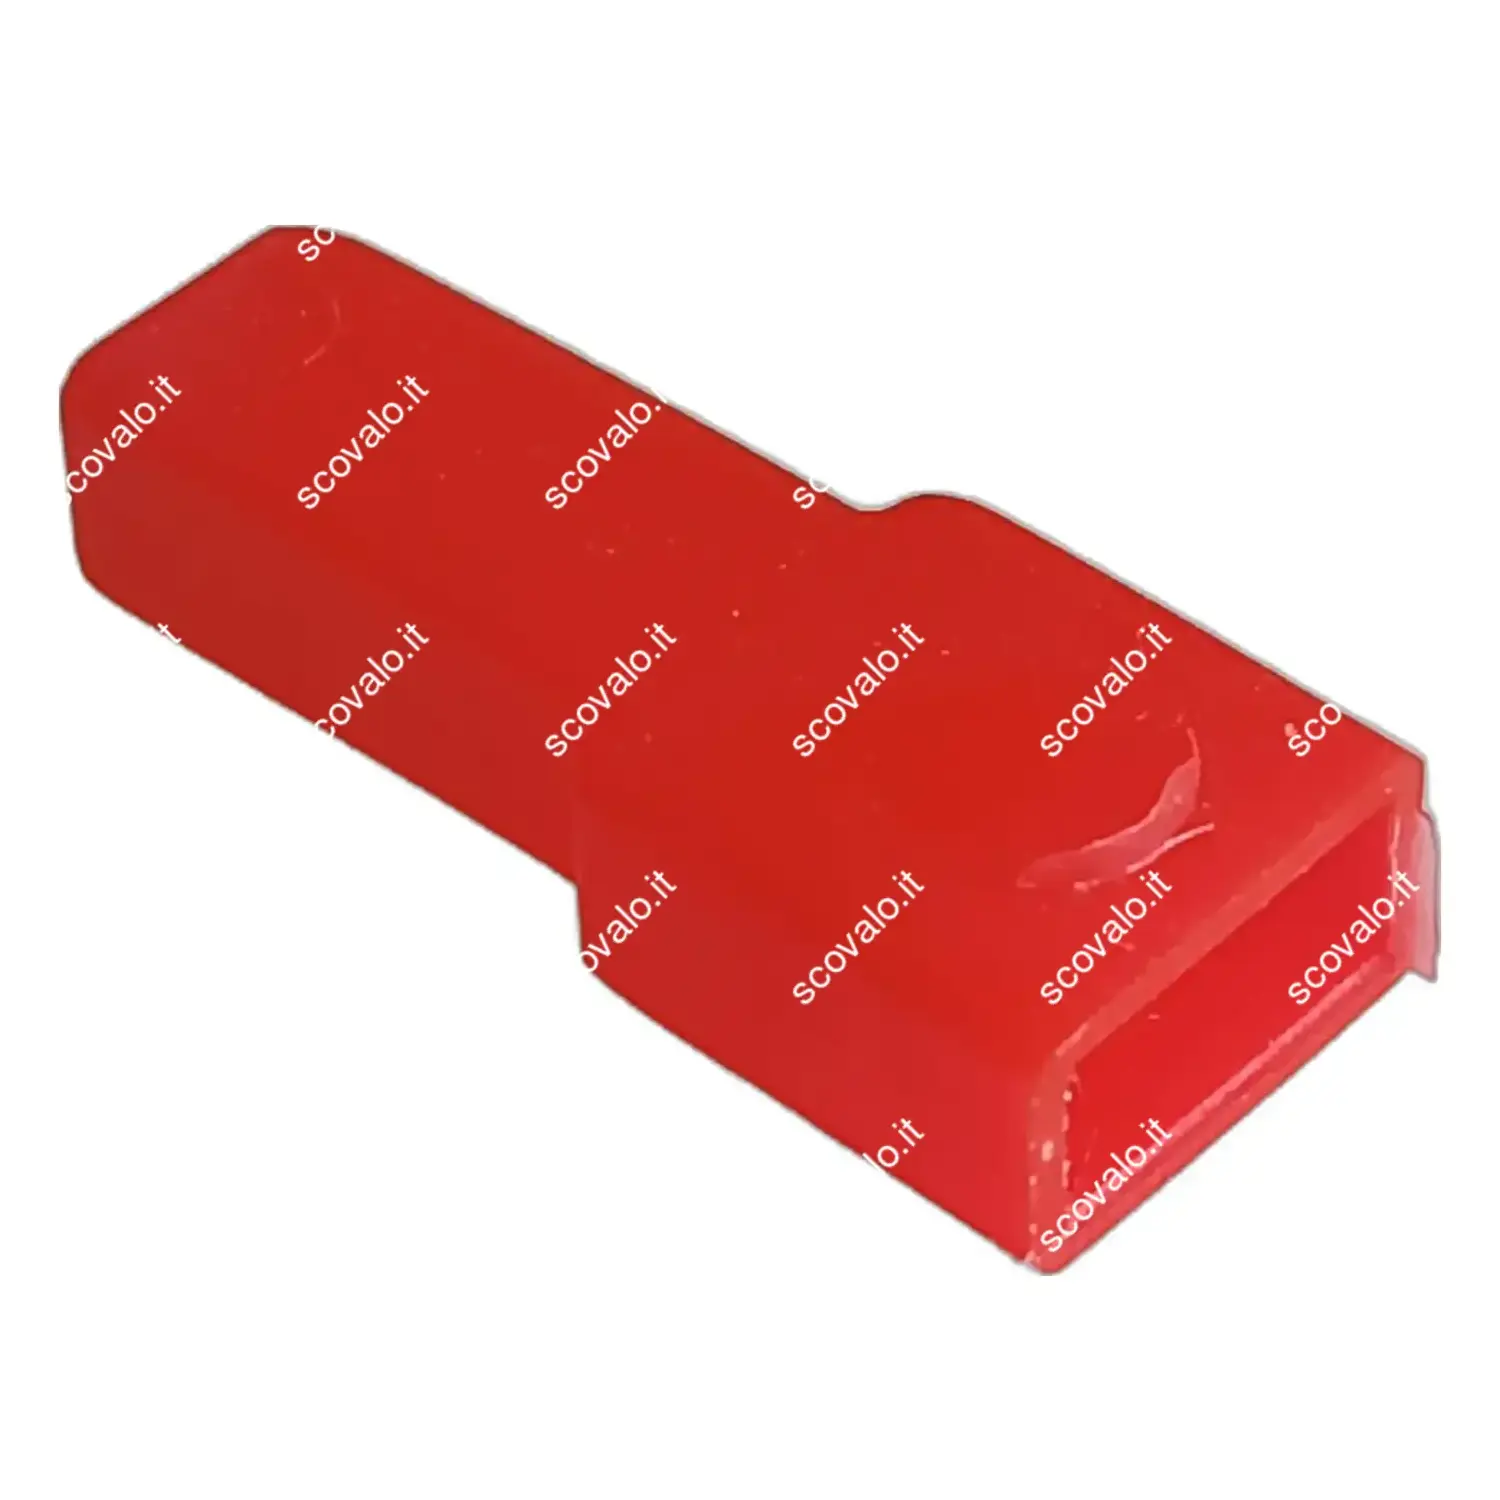 immagine del prodotto coprifaston per faston maschio passo 6,35 mm rosso 10 pezzi